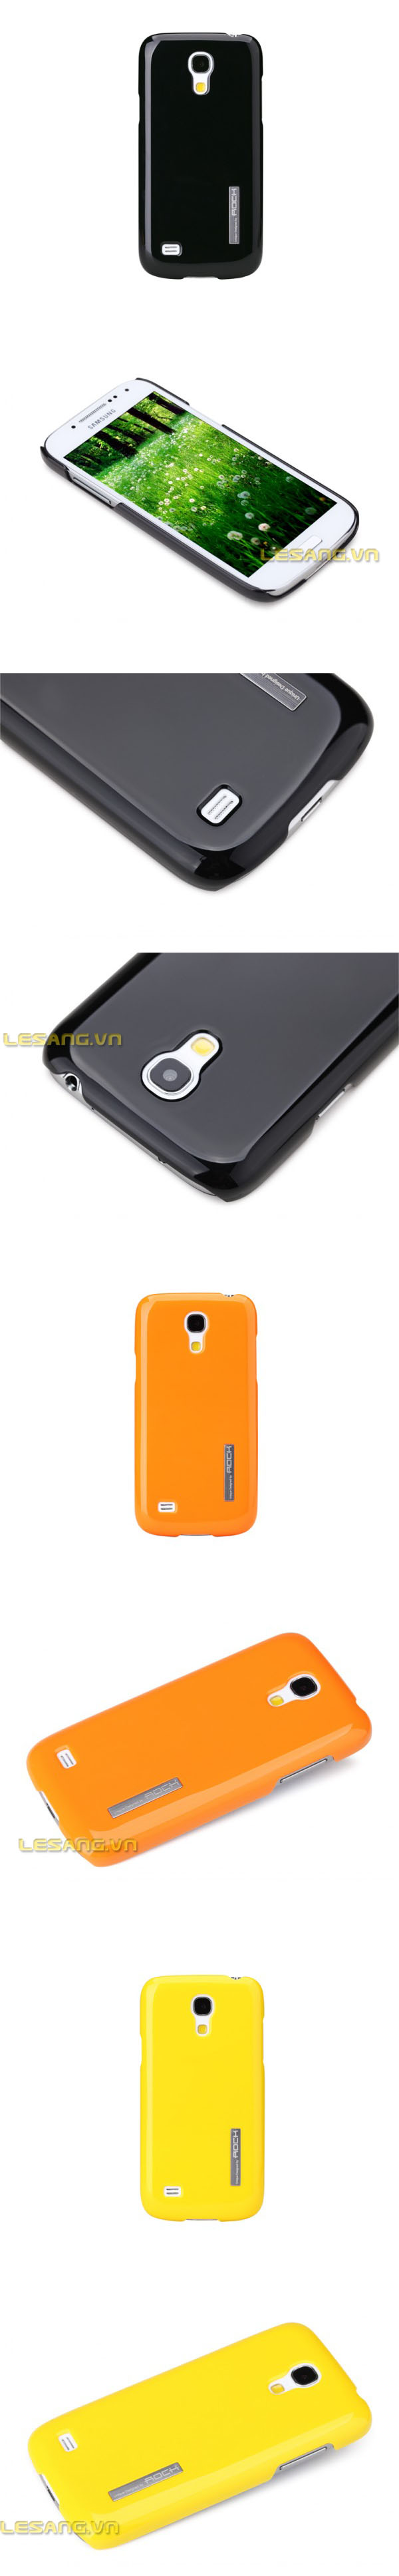 Ốp lưng Galaxy S4 Mini Rock Full Color cao cấp siêu mỏng